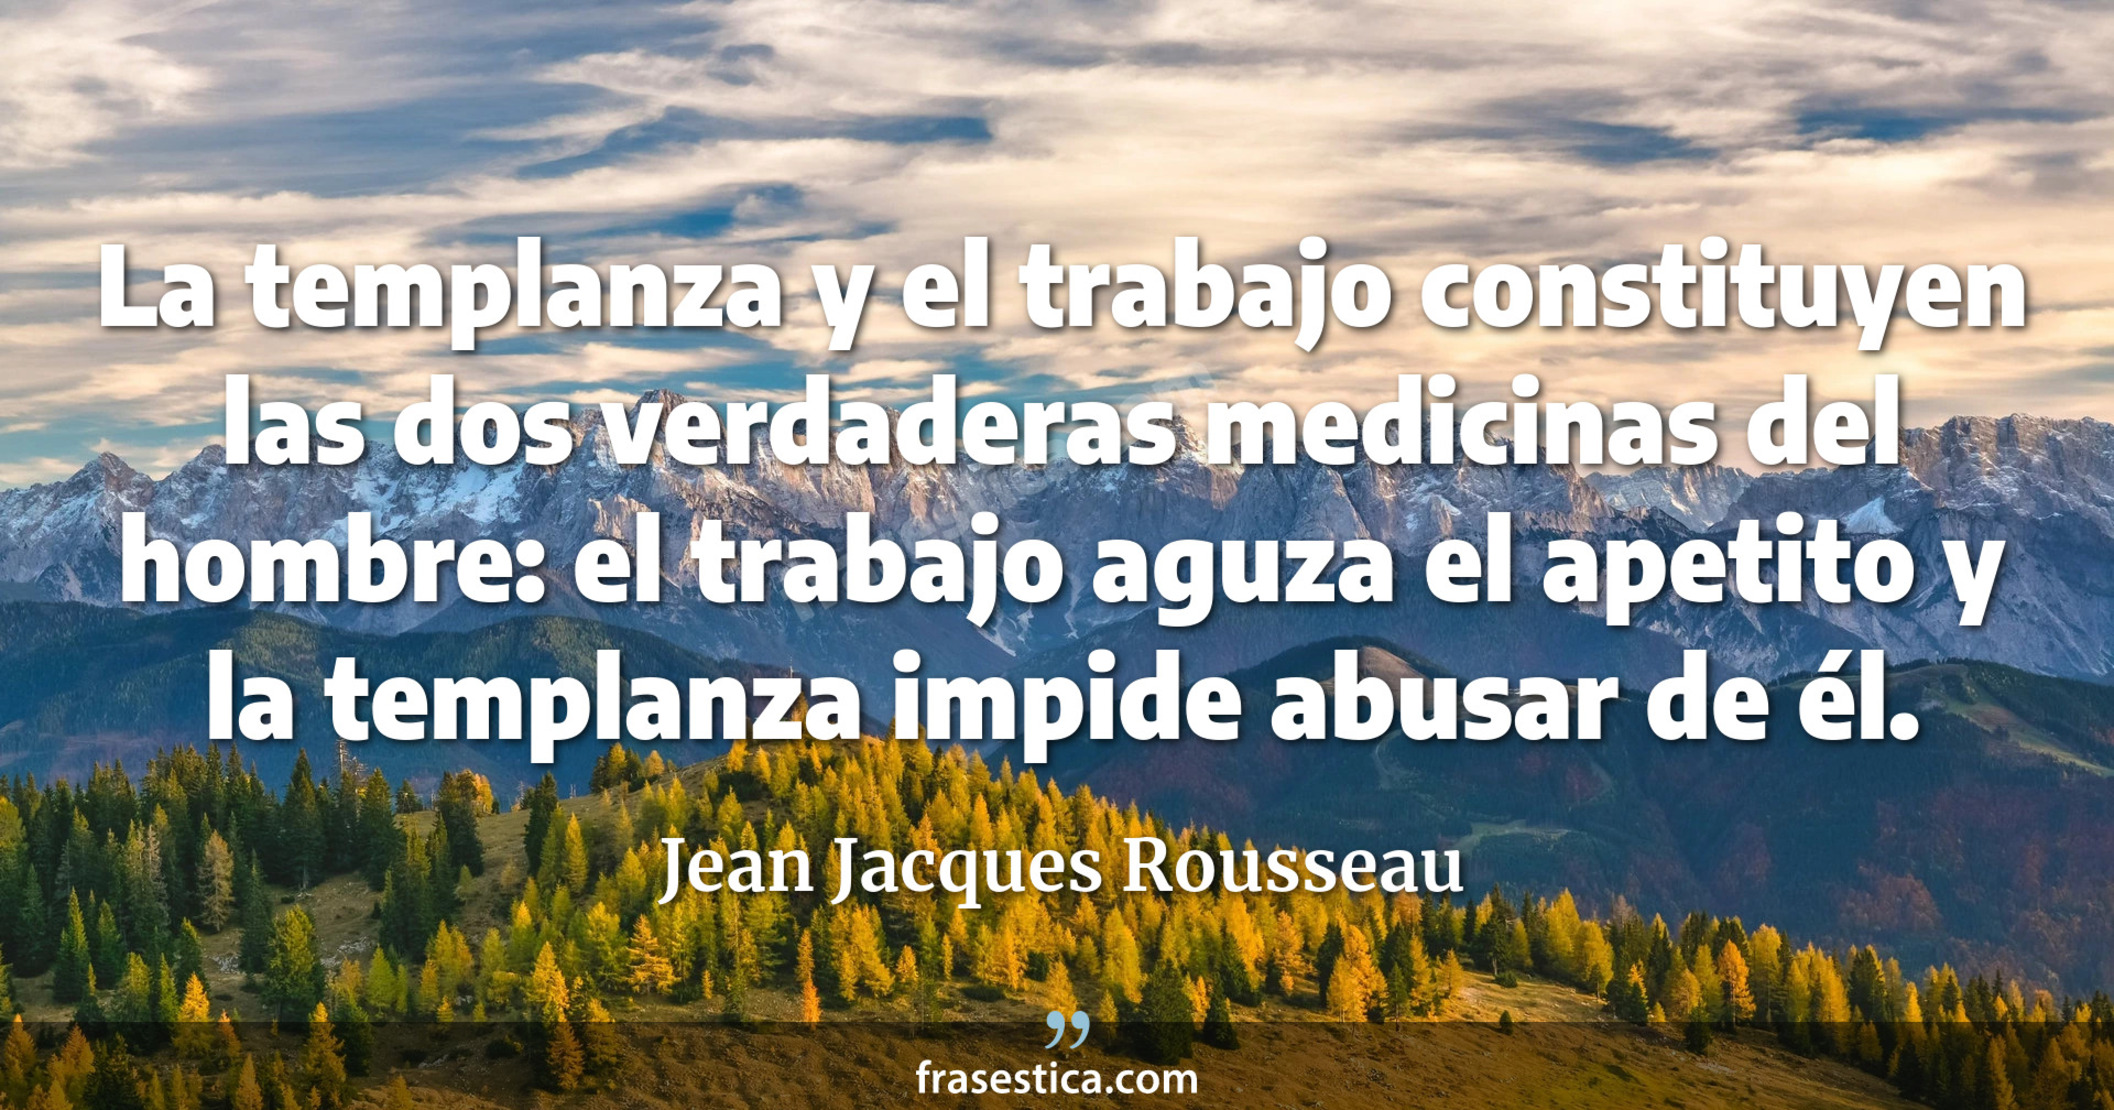 La templanza y el trabajo constituyen las dos verdaderas medicinas del hombre: el trabajo aguza el apetito y la templanza impide abusar de él. - Jean Jacques Rousseau